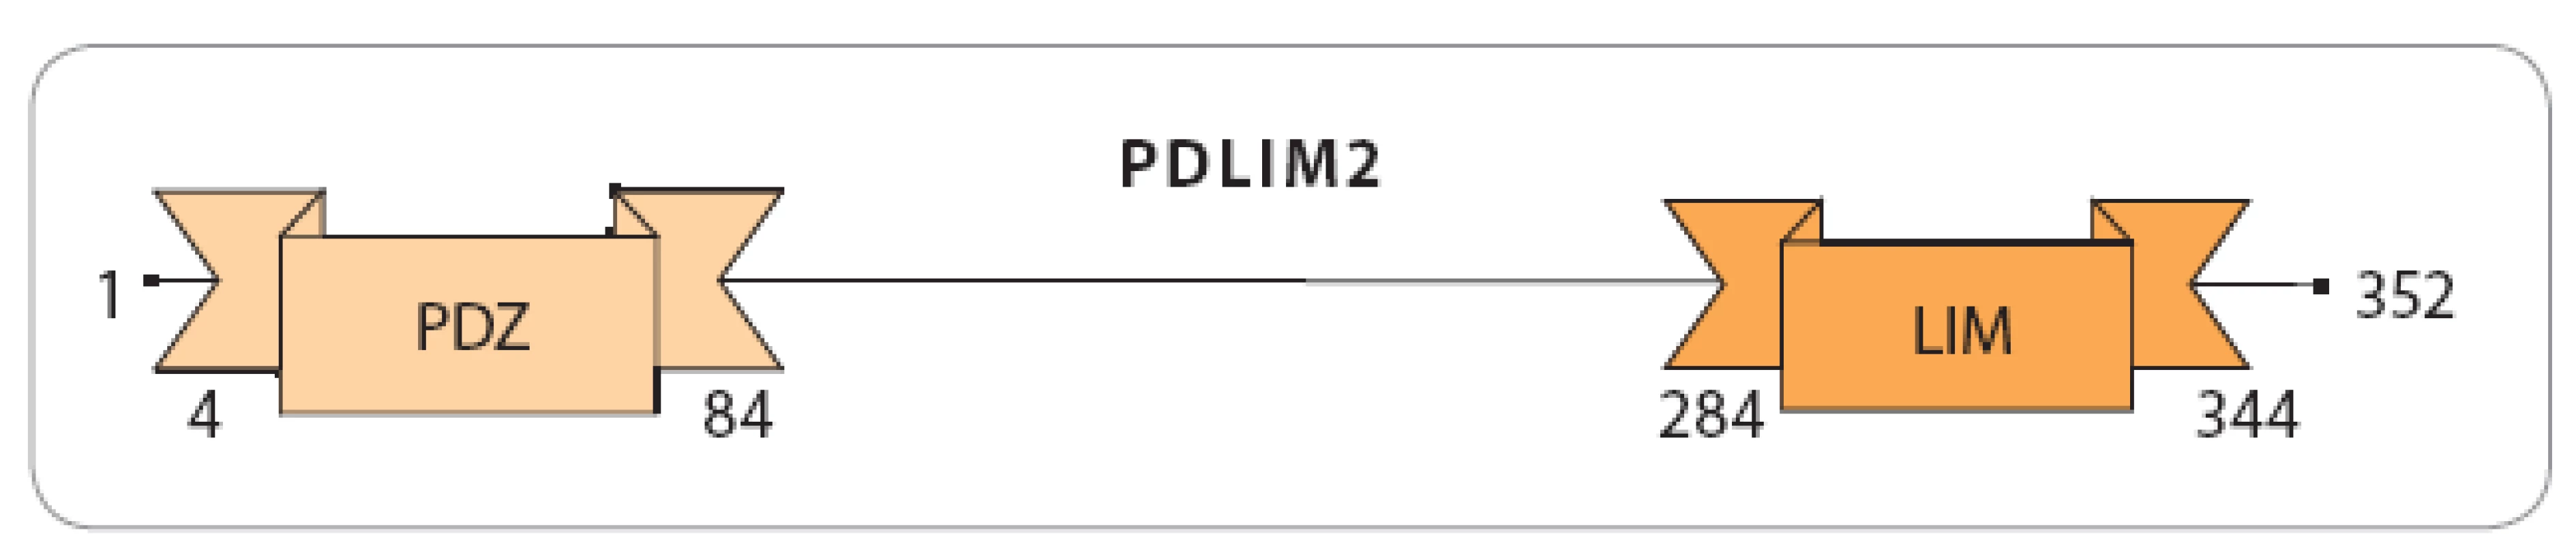 Domény PDLIM2.